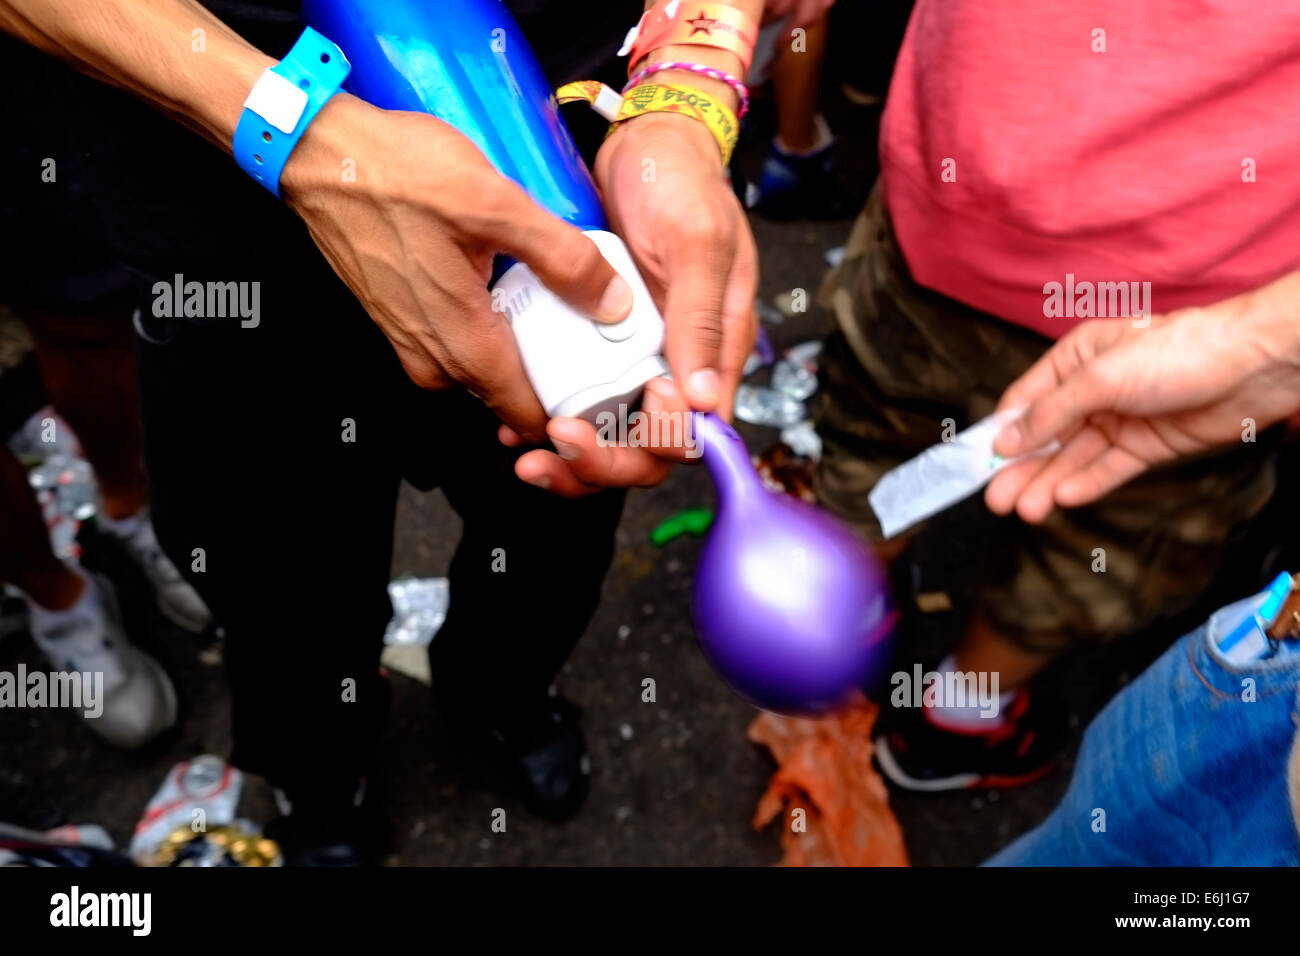 Londres, Royaume-Uni. 24 août, 2014. Notting Hill Carnival 2014. Le médicament de choix au Carnaval semblait être pris d'oxyde nitreux par ballon. Megawhat Crédit : Rachel/Alamy Live News Banque D'Images